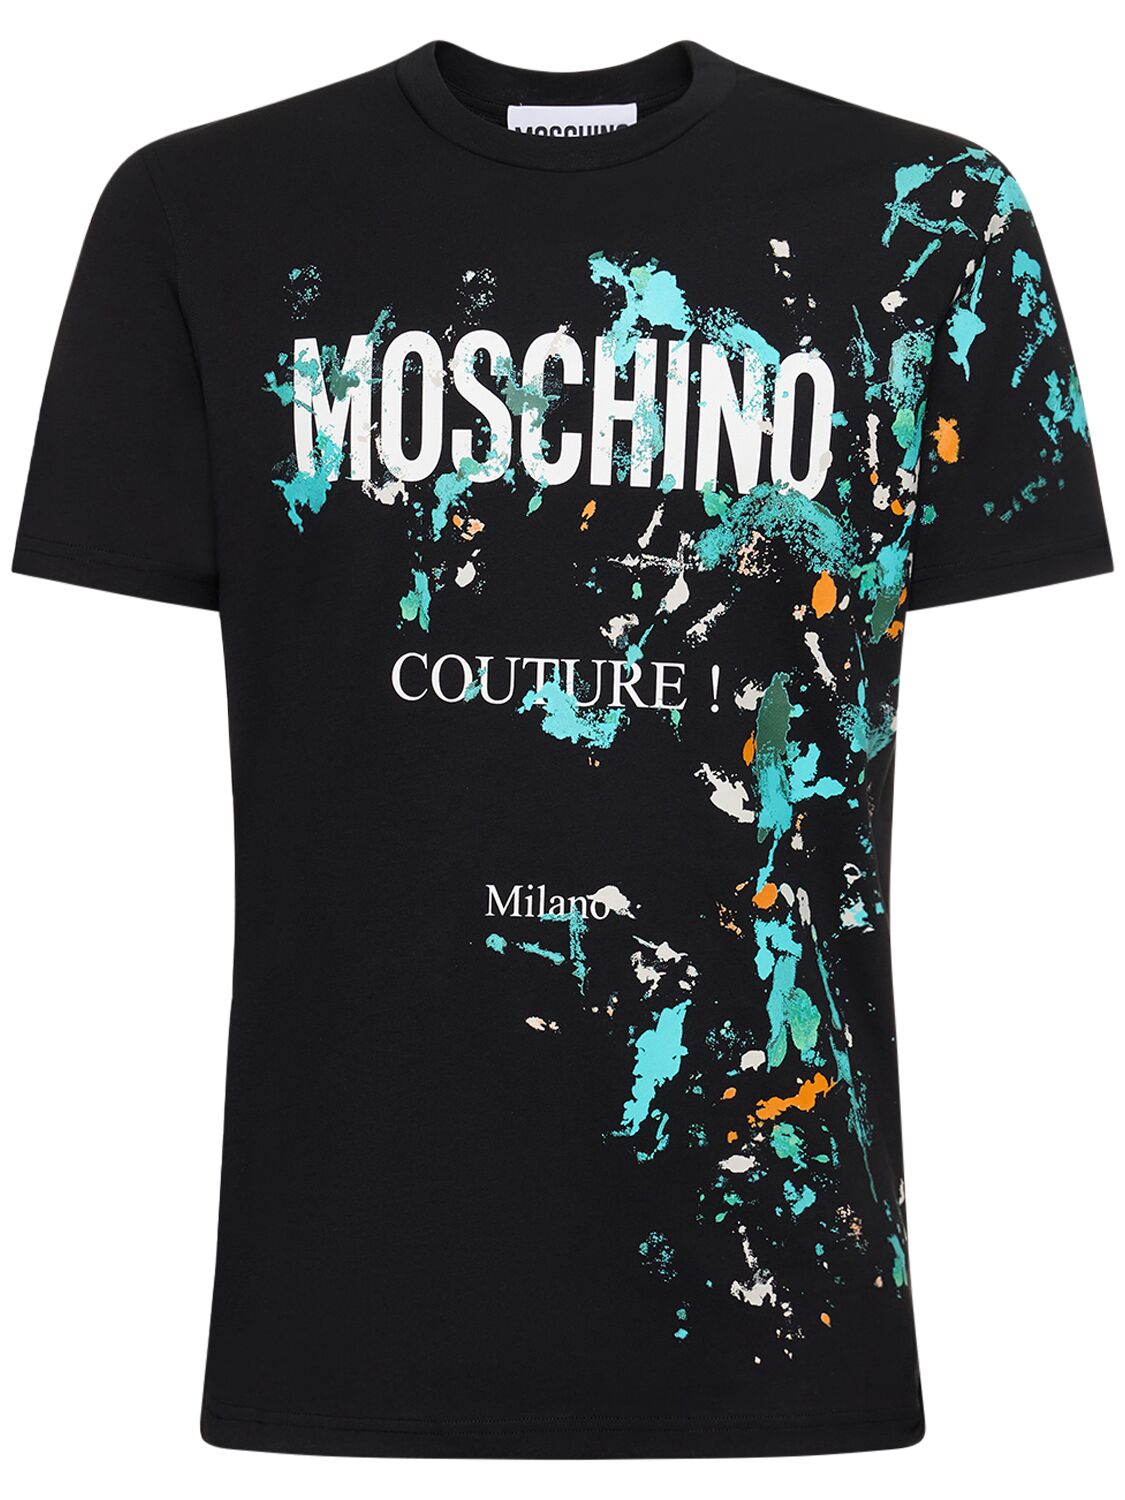 T-shirt In Jersey Di Cotone Organico Con Logo - MOSCHINO - Modalova